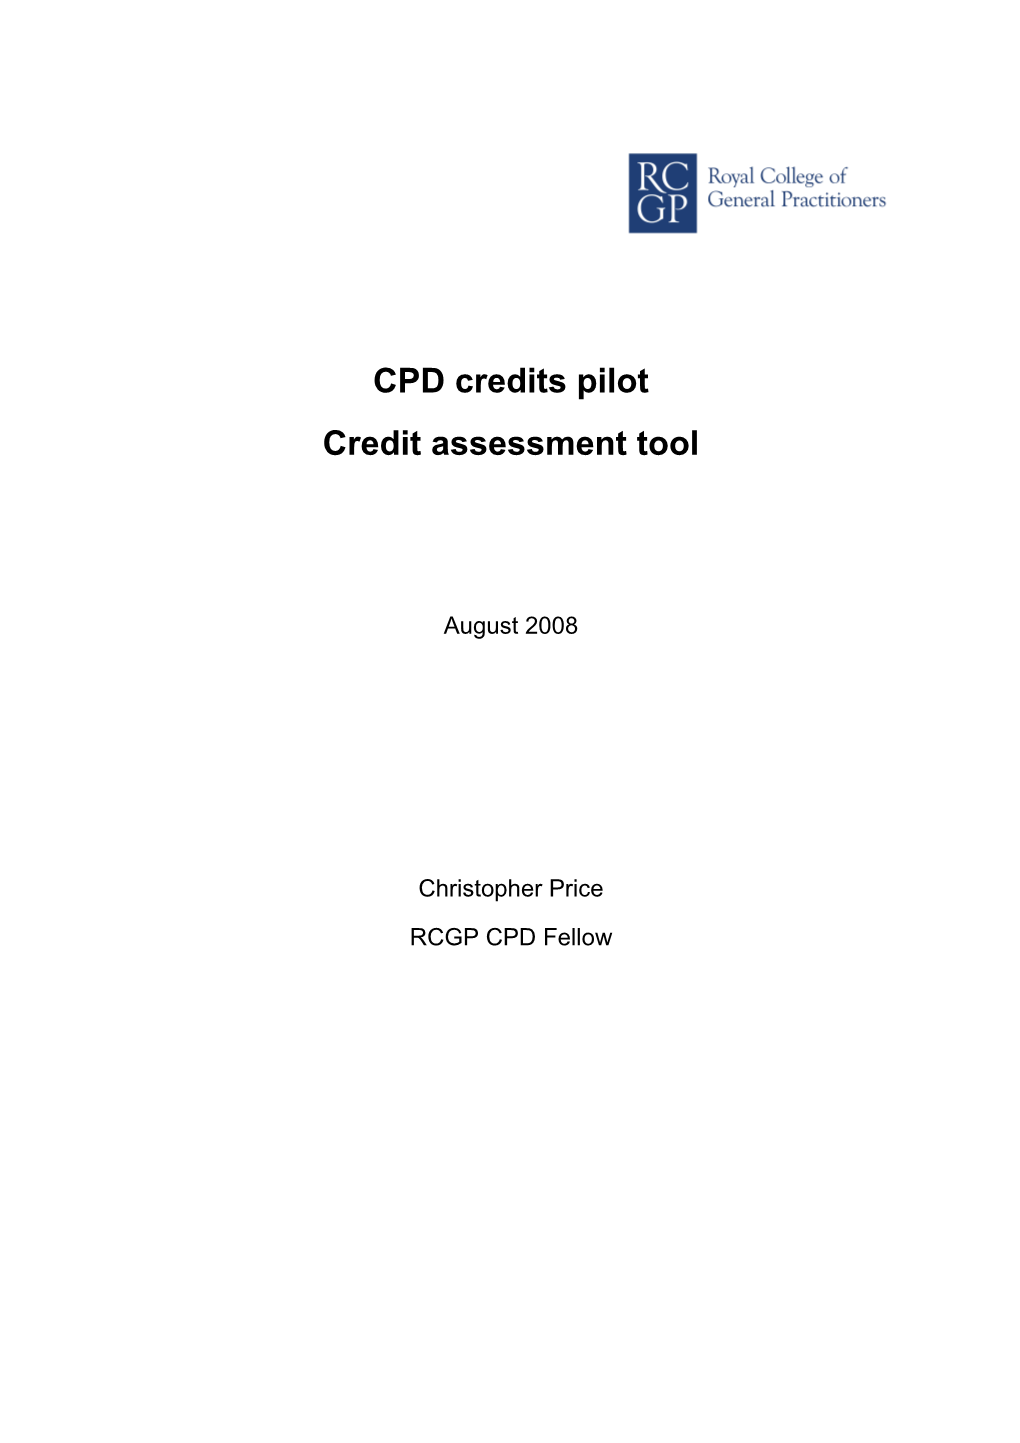 Credit Assessment Tool